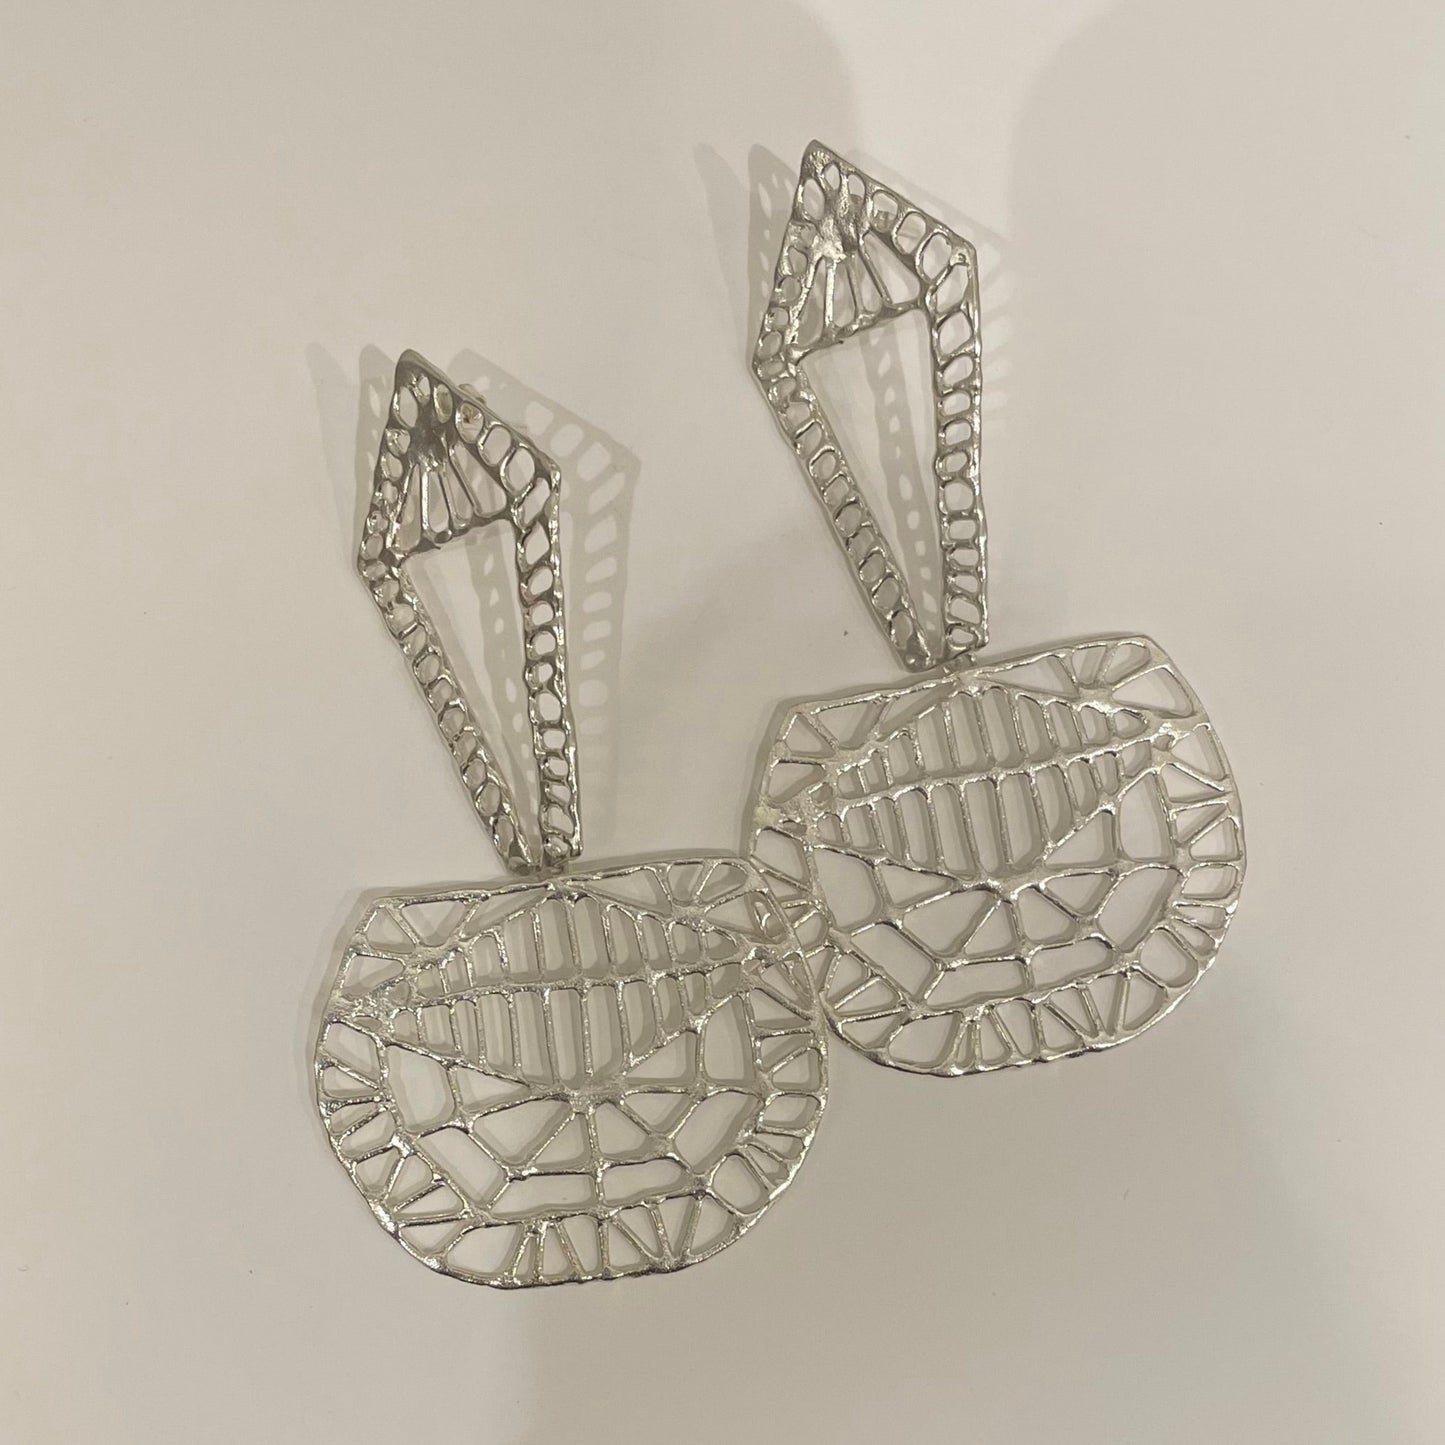 Geometric silver earrings